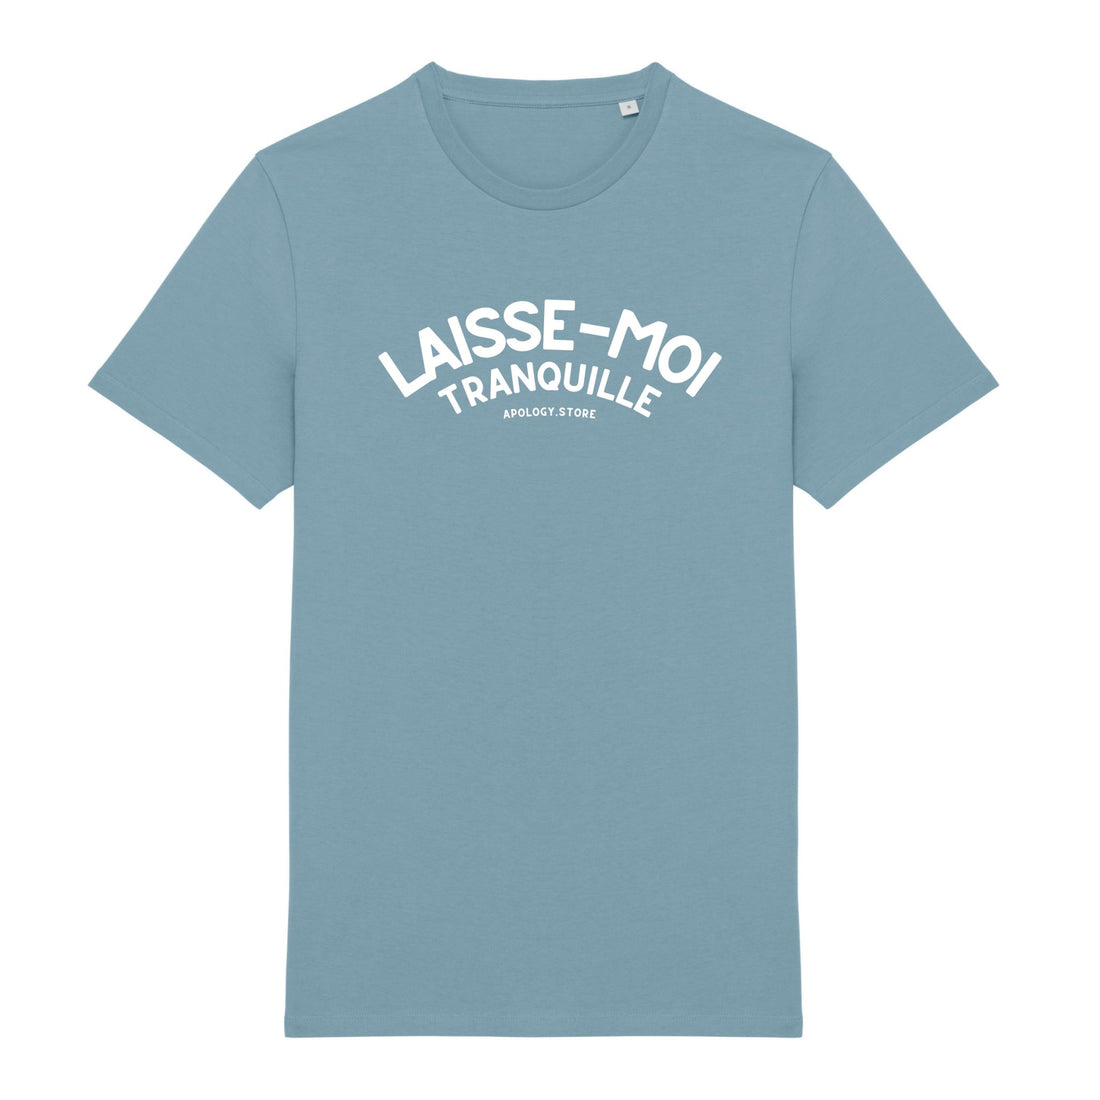 T-shirt Laisse Moi Tranquille - Fabriqué au Portugal XS Bleu_arctique - Imprimé en France